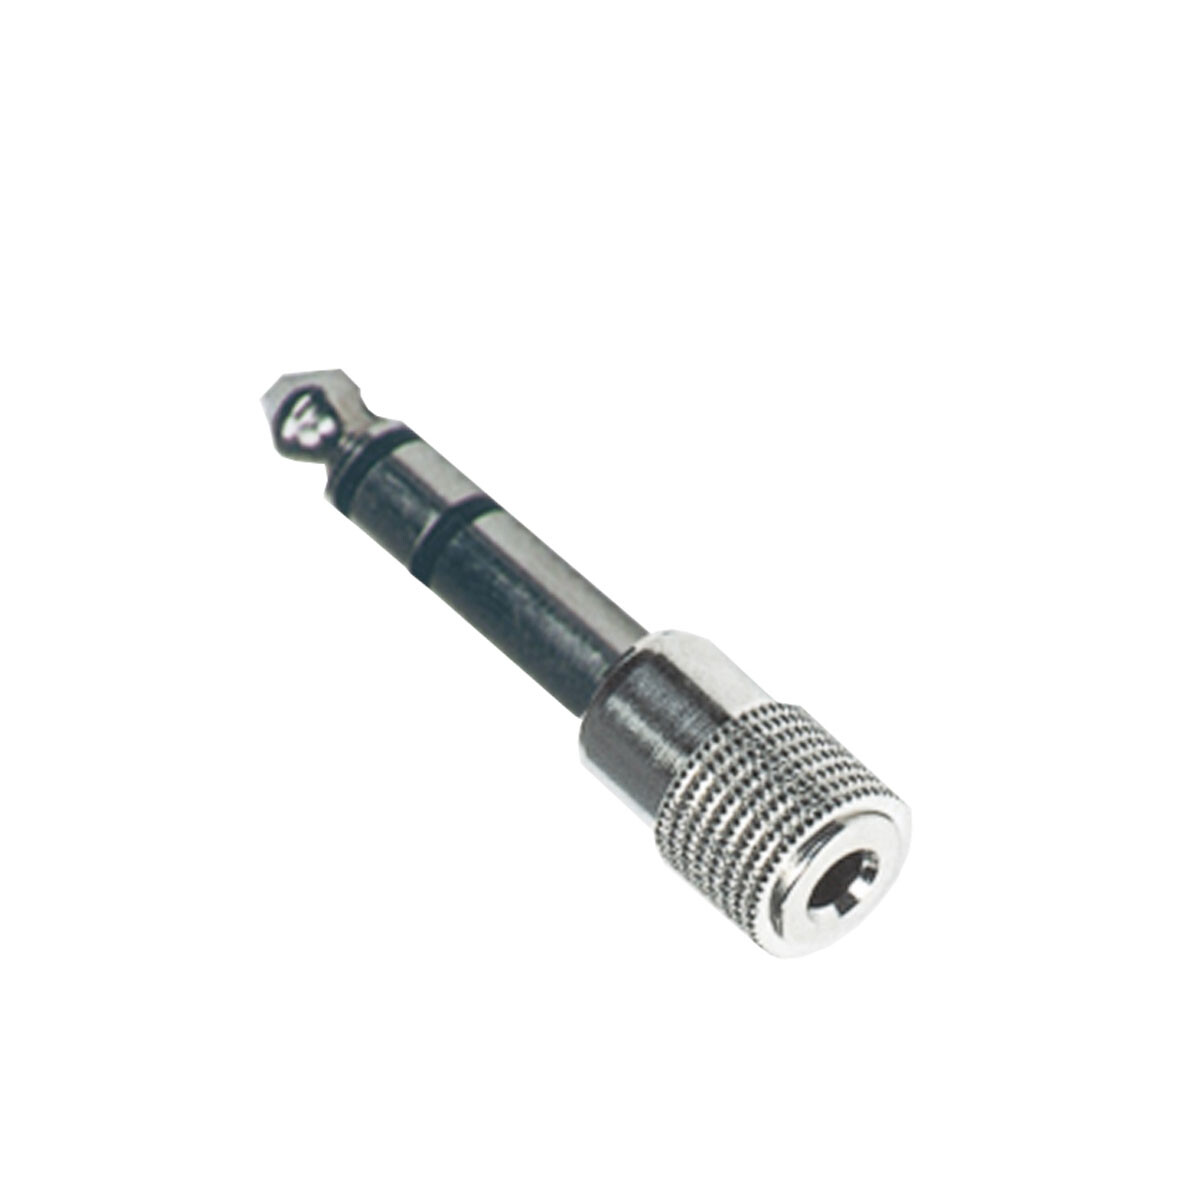 Adaptador Soundking Cc3091 3.5mm H / 6.3mm M Metal 